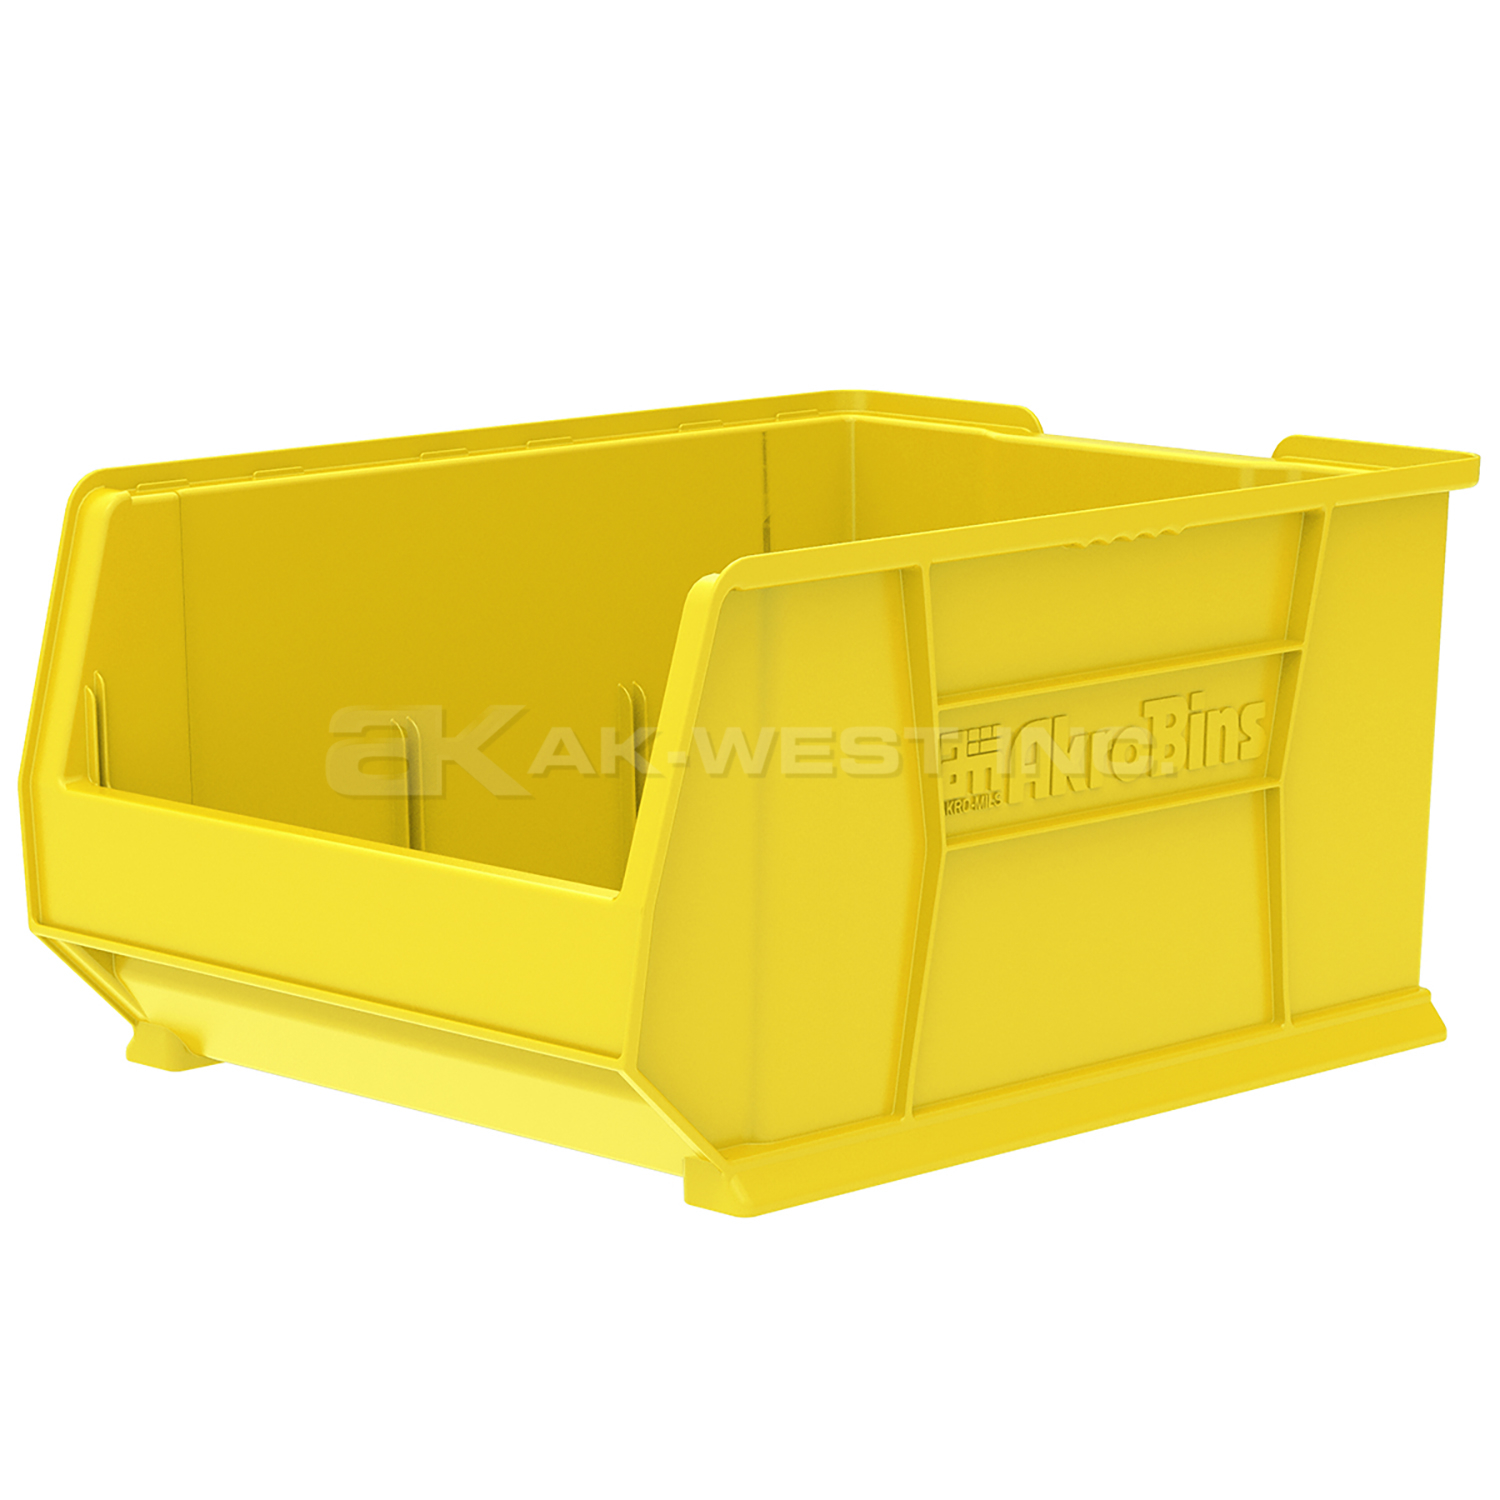 Yellow, 23-7/8" x 18-1/4" x 12" Stacking Shelf Bin (1 Per Carton)